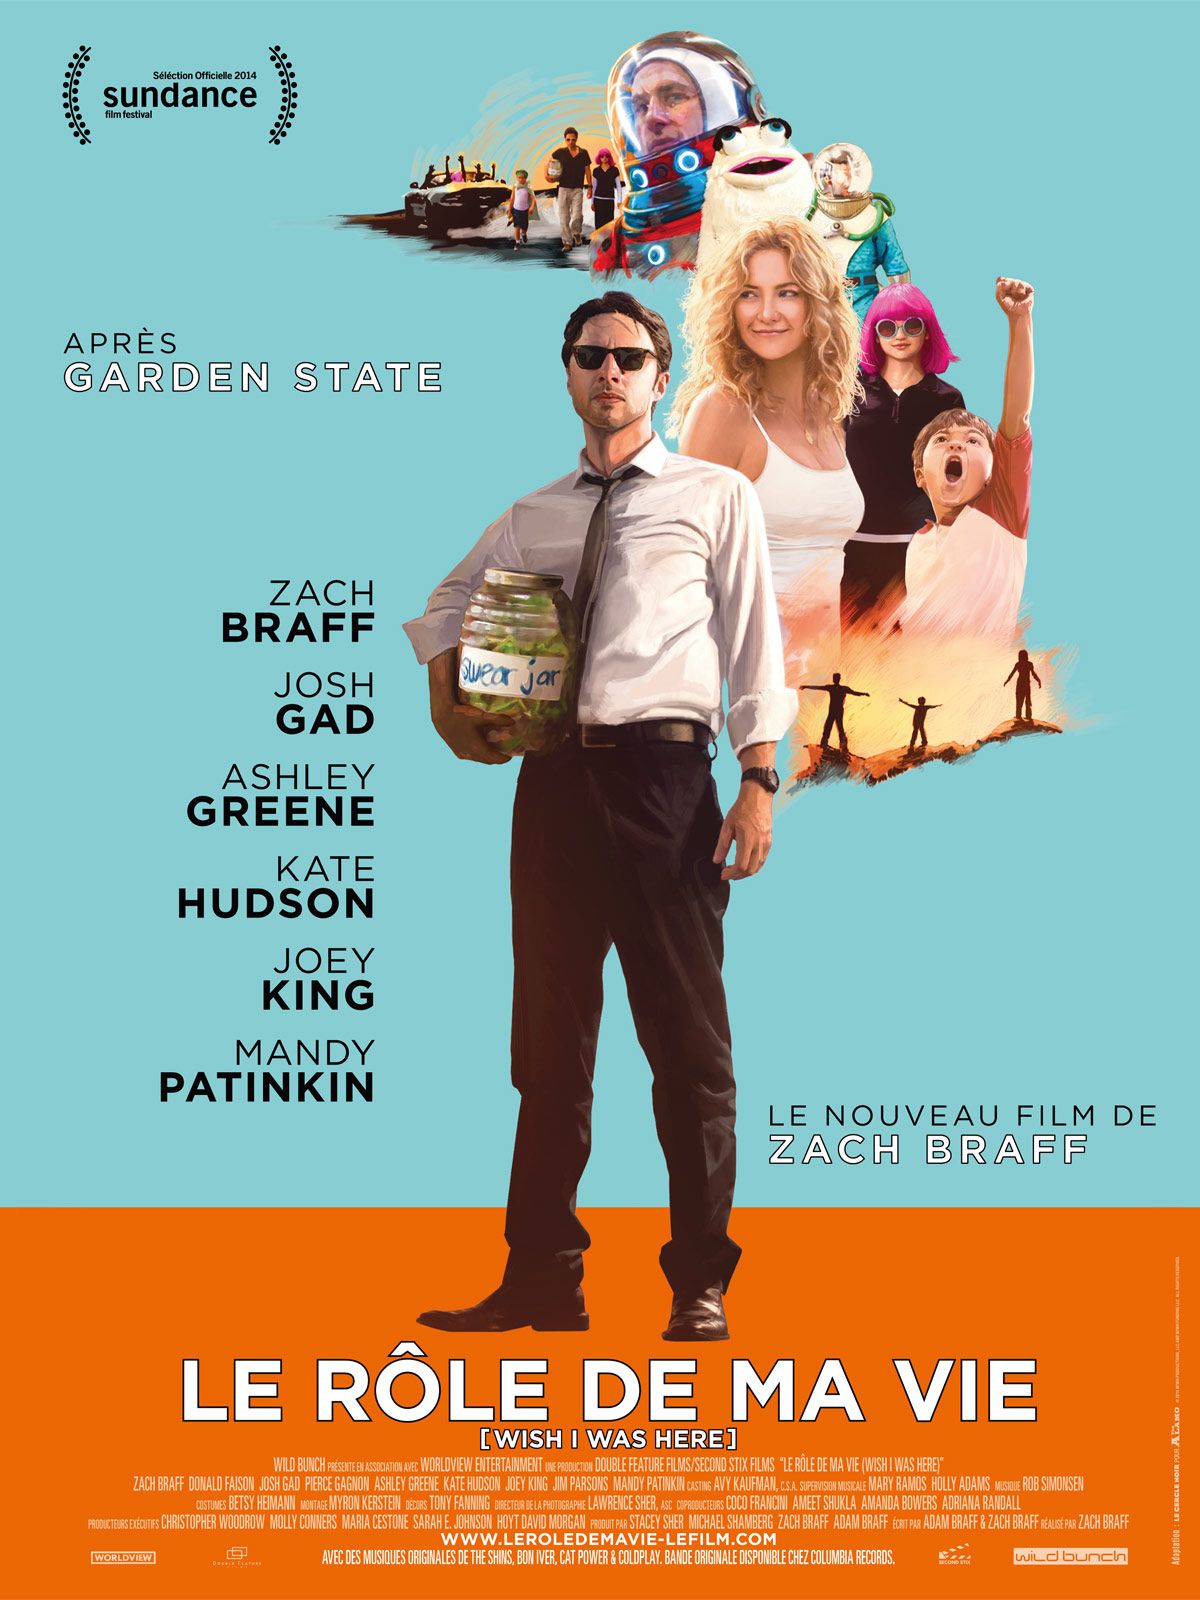 Le Rôle de ma vie - Film (2014) streaming VF gratuit complet